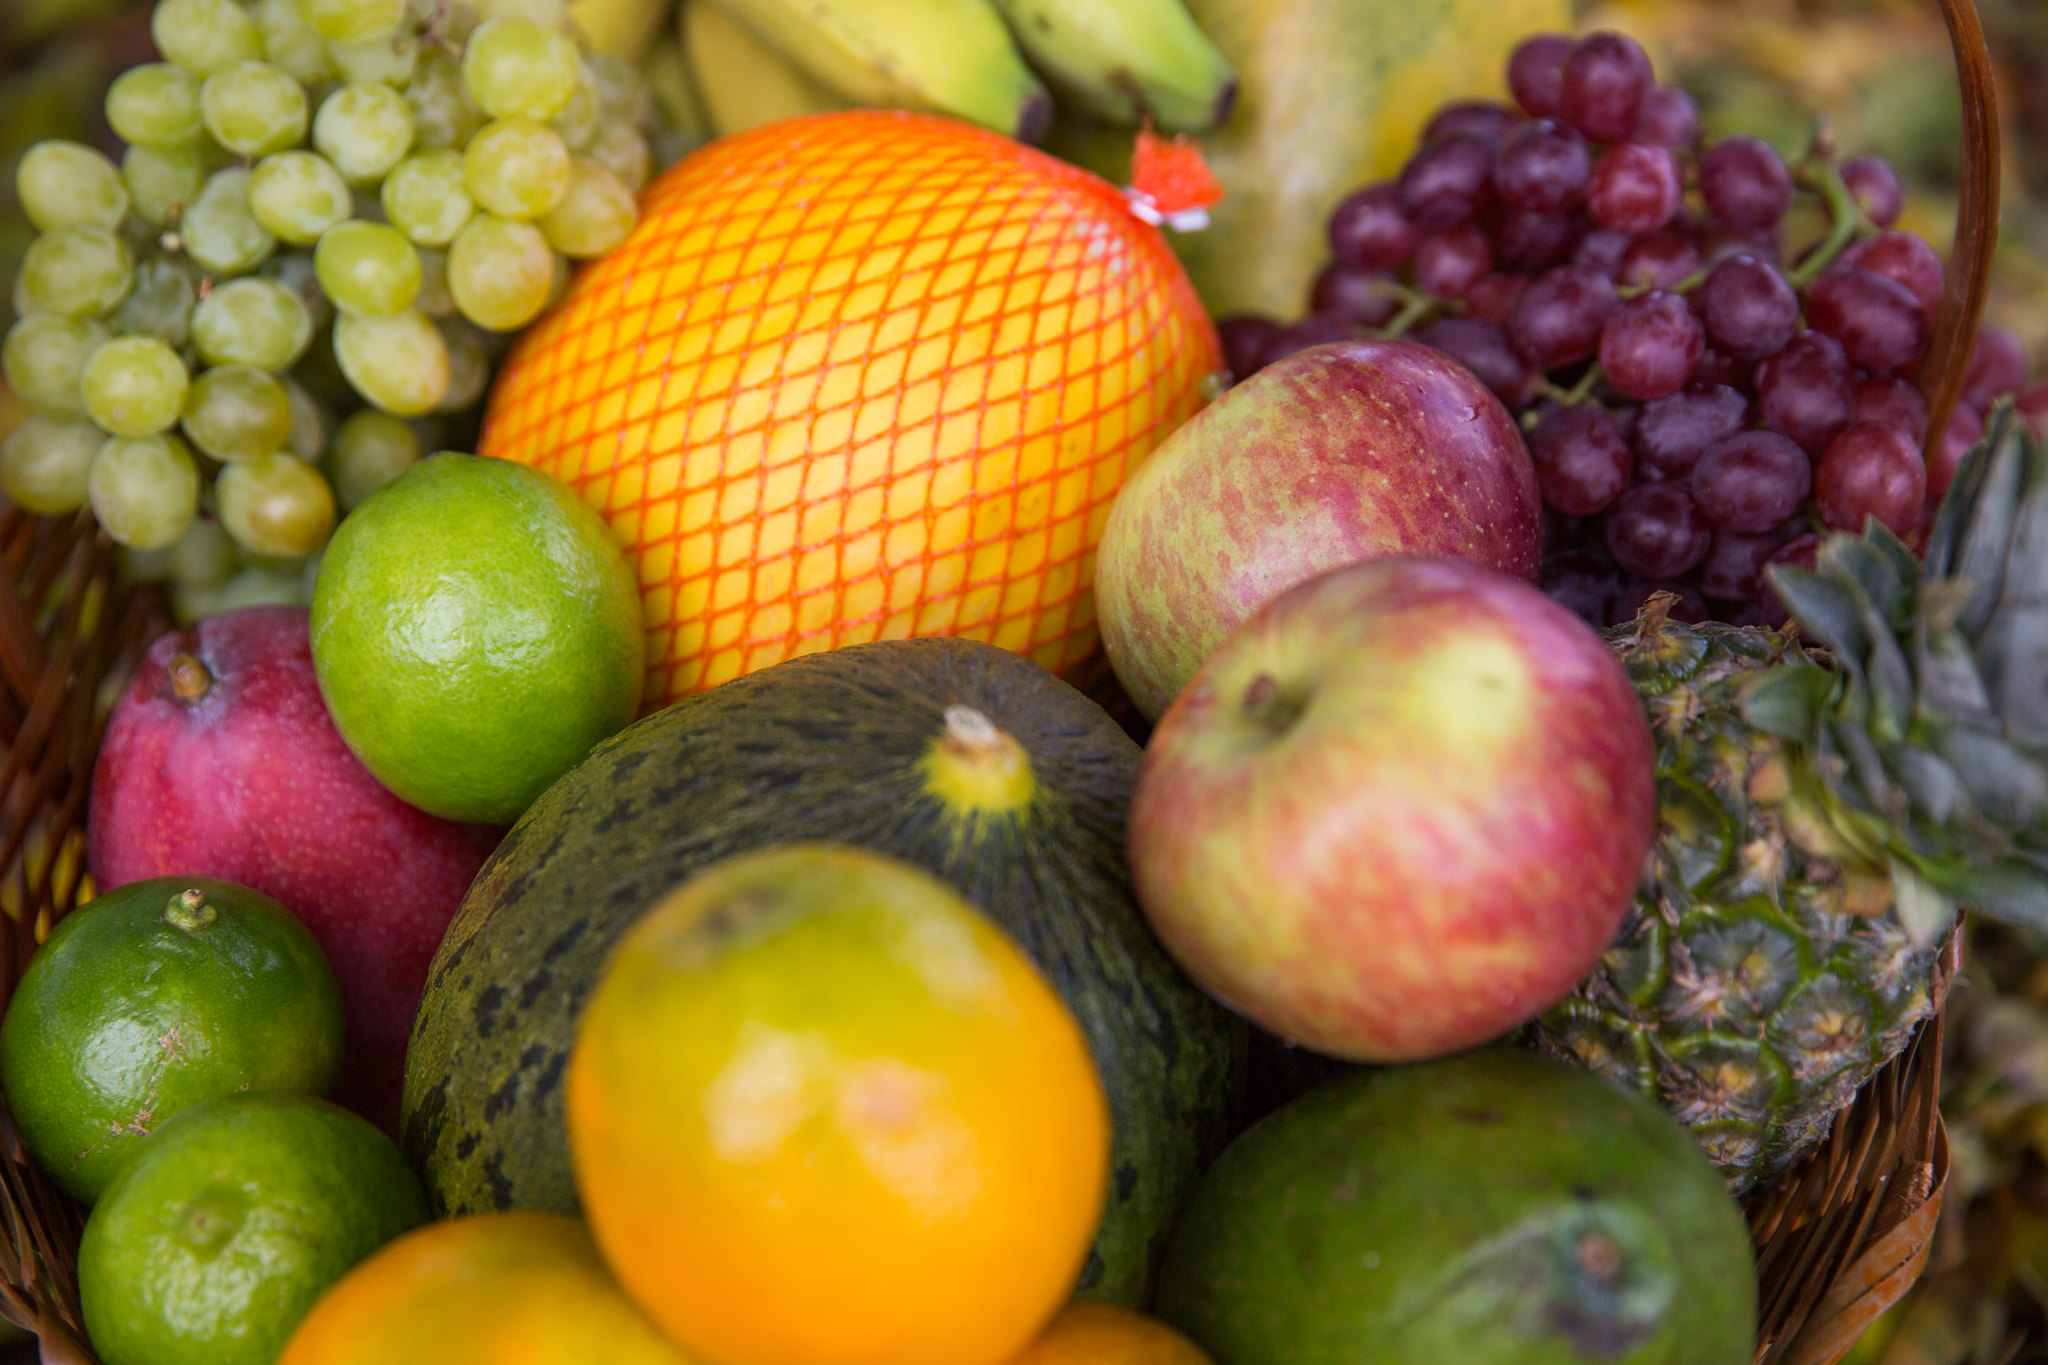 Brasil bate recorde histórico com mais de US$ 1,21 bilhão em exportação de frutas em 2021